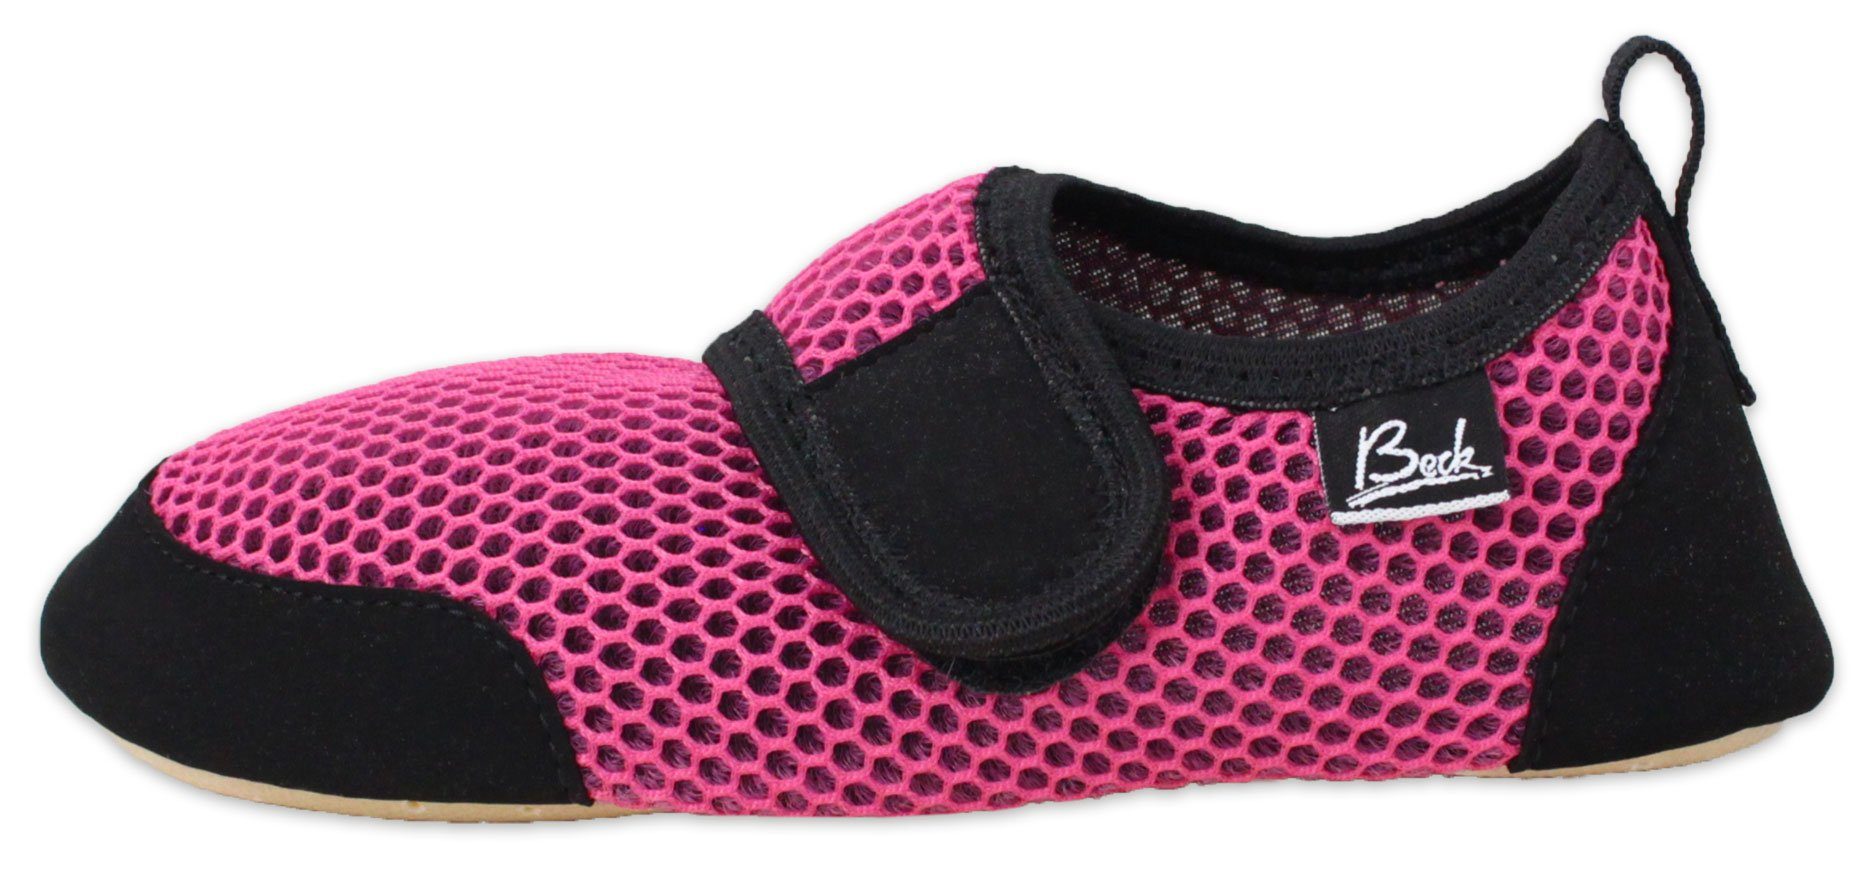 Beck BECK-BUDDIES - Indoor-Aktiv-Schuh mit atmungsaktiver Sohle Hausschuh Klettverschluss, Gefühl des Barfußlaufens, Gesunde Fußentwicklung pink